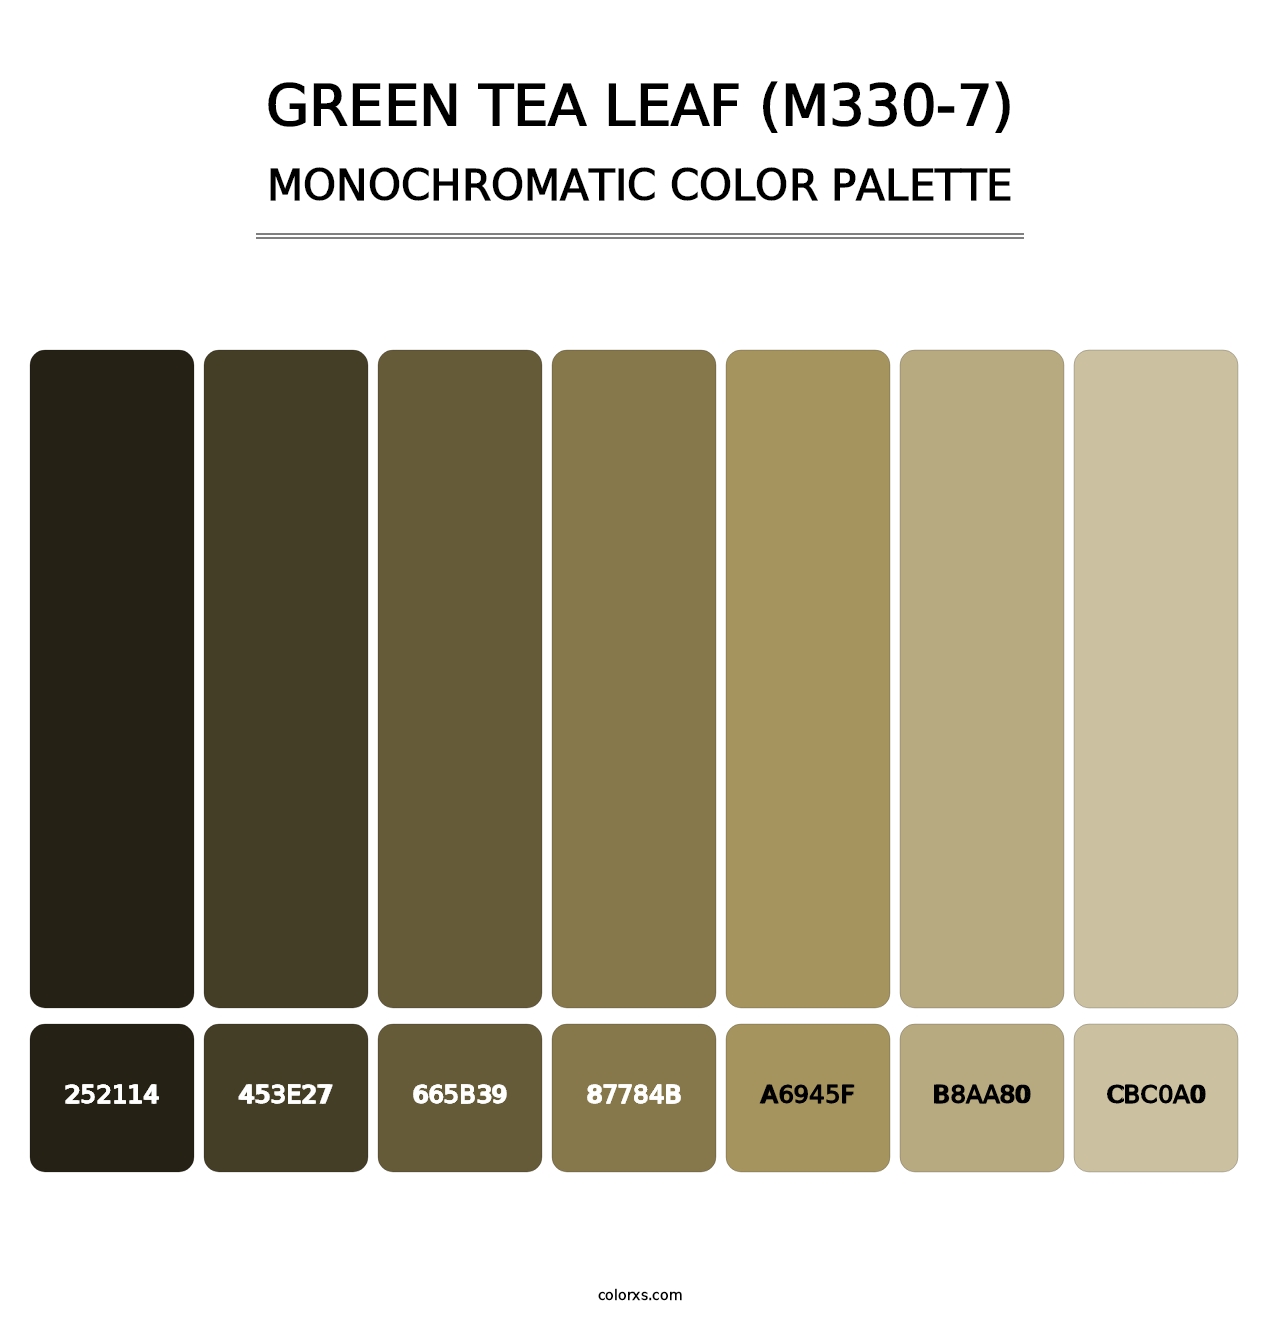 Green Tea Leaf (M330-7) - Monochromatic Color Palette